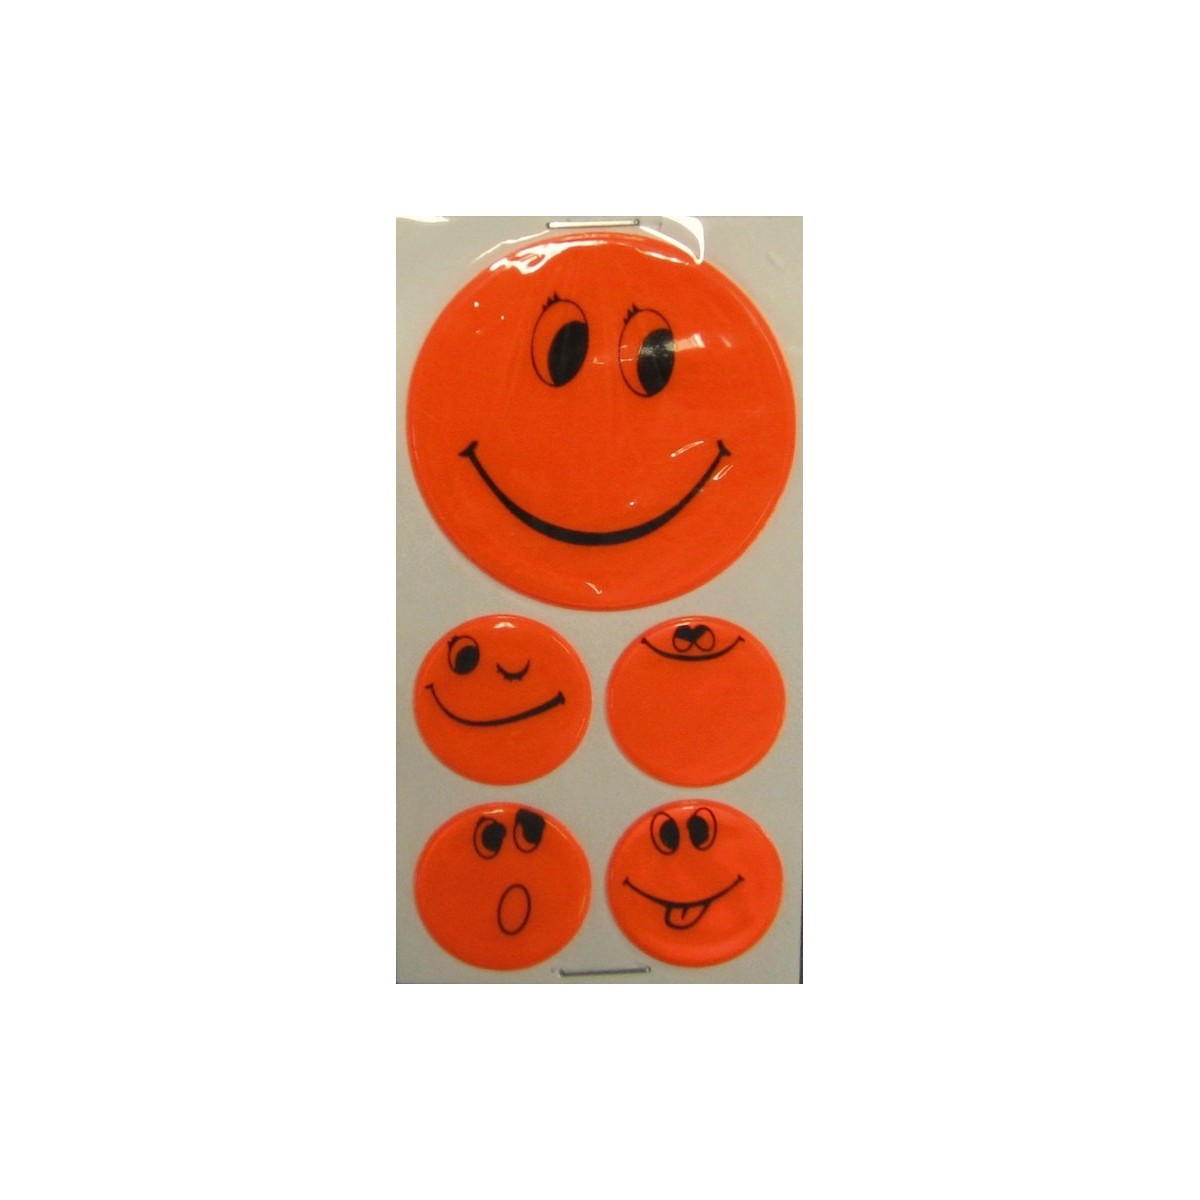 Set de pegatinas reflectantes Smily naranja, 1 x Ø 5 cm, 4 x Ø 2,5